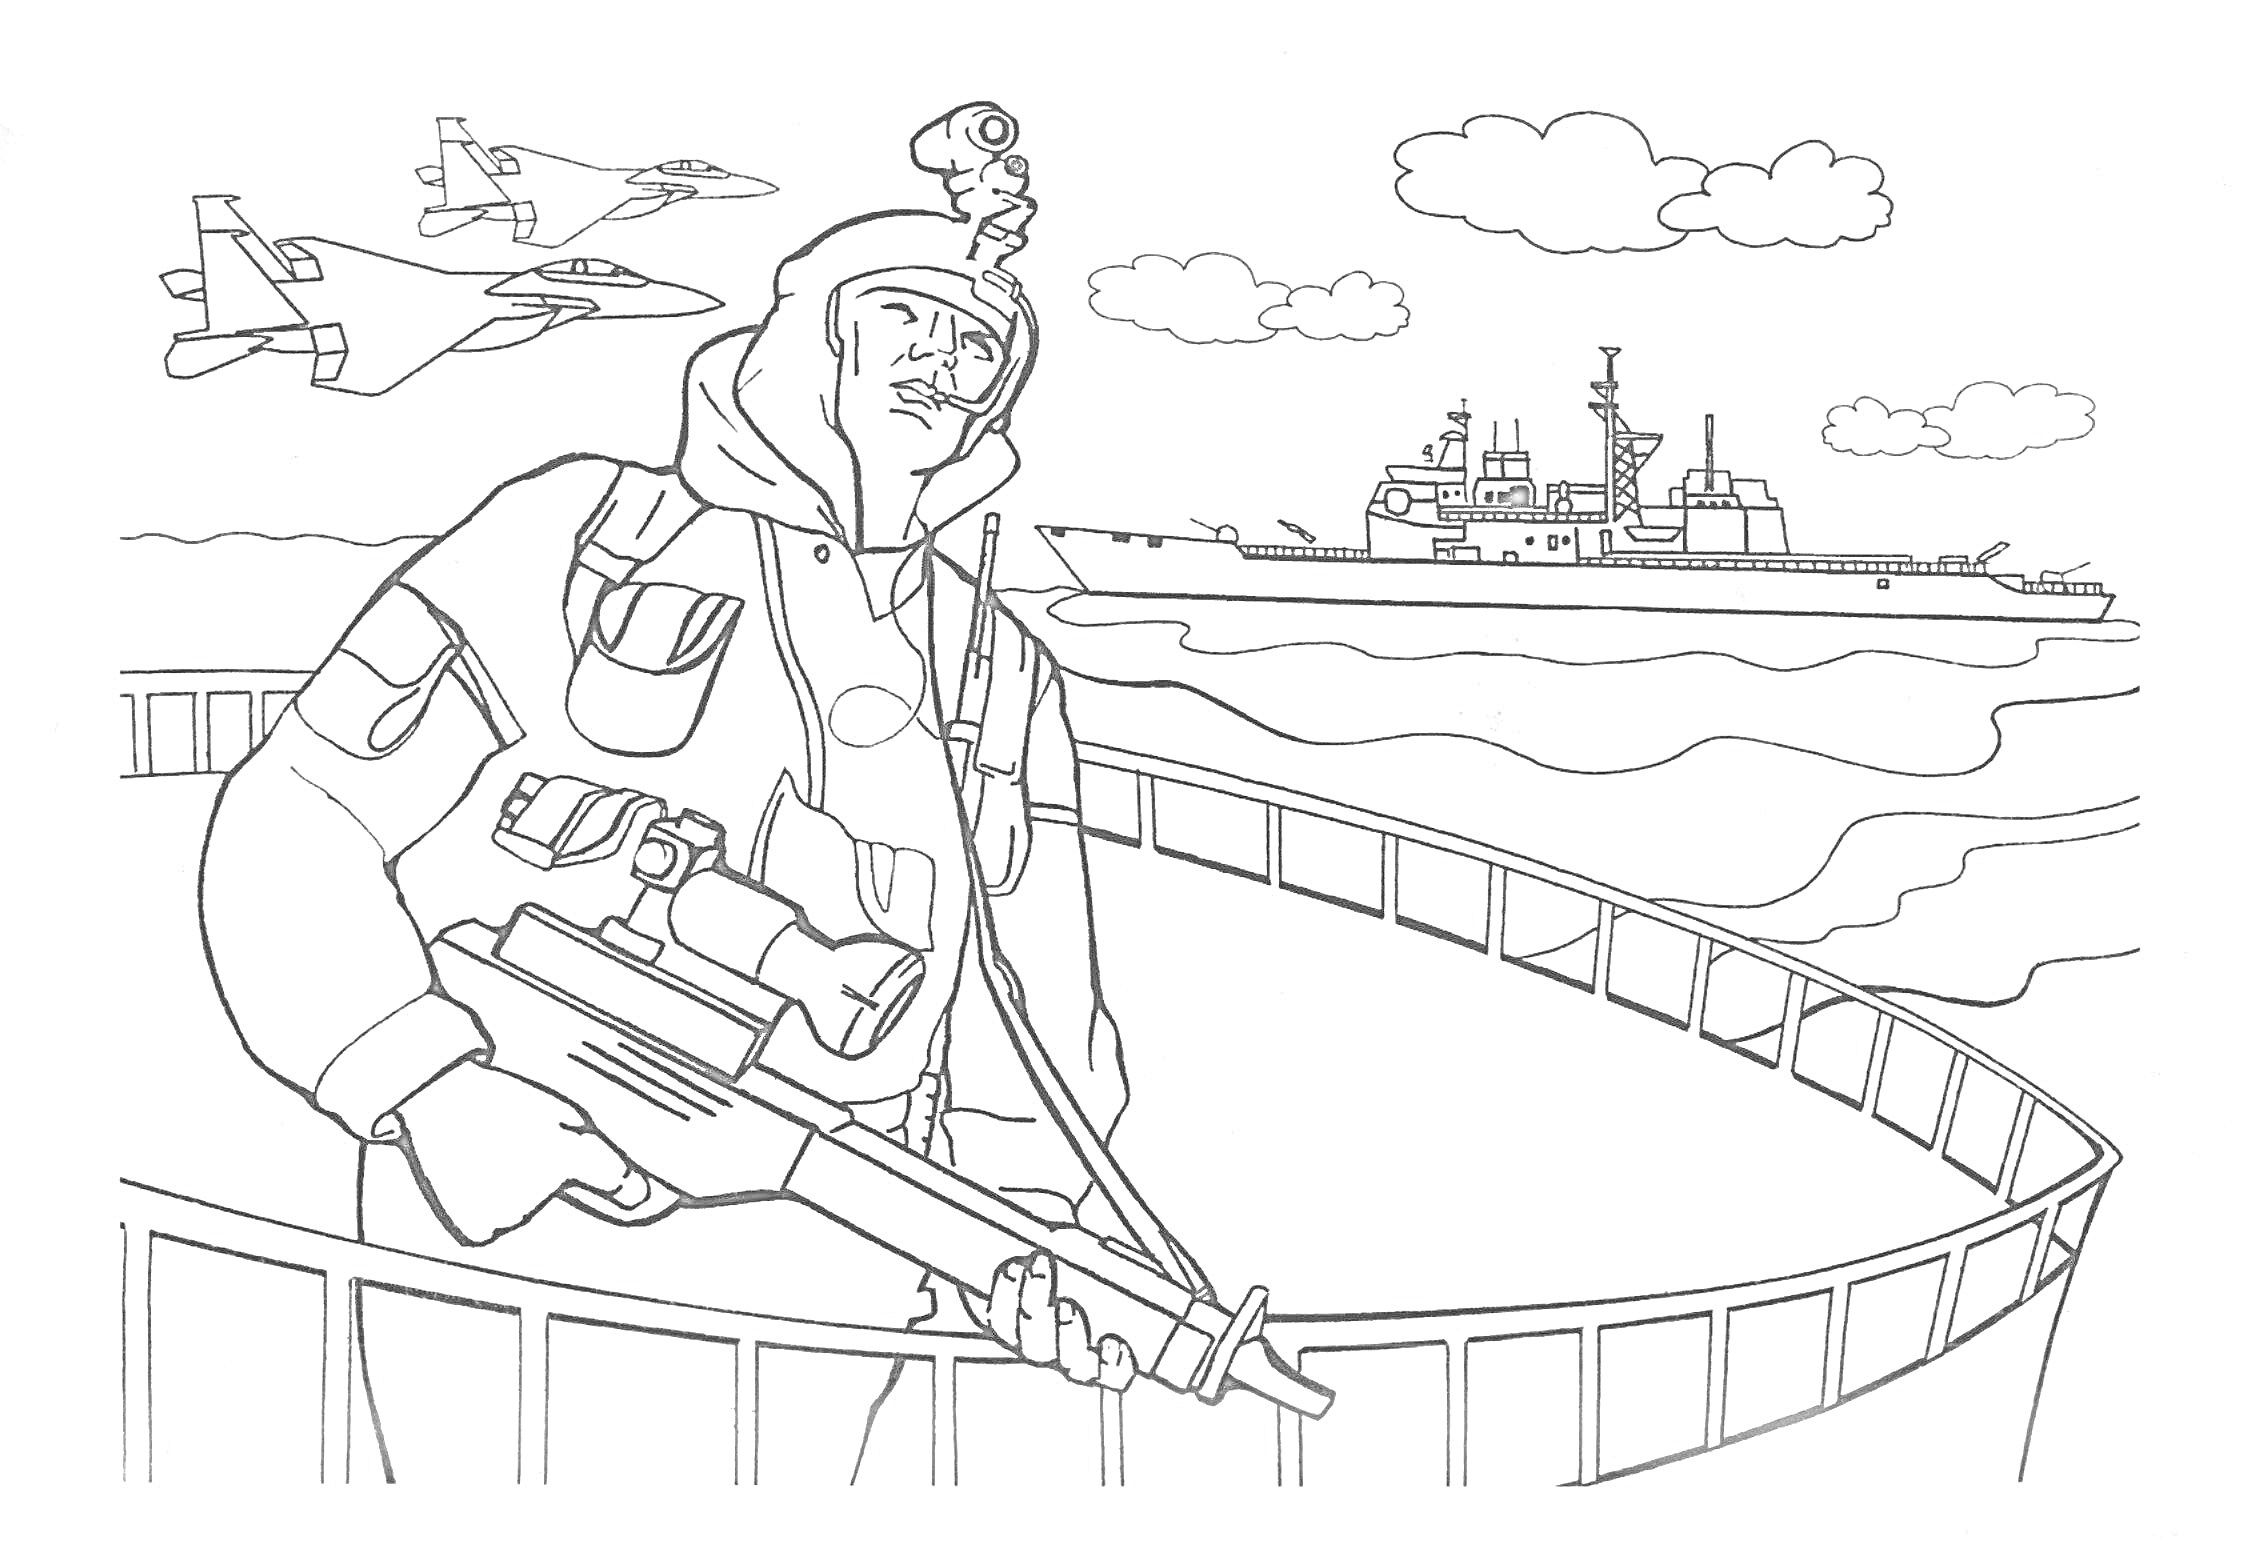 Солдат с винтовкой на корабле, истребители в небе и военные корабли в море